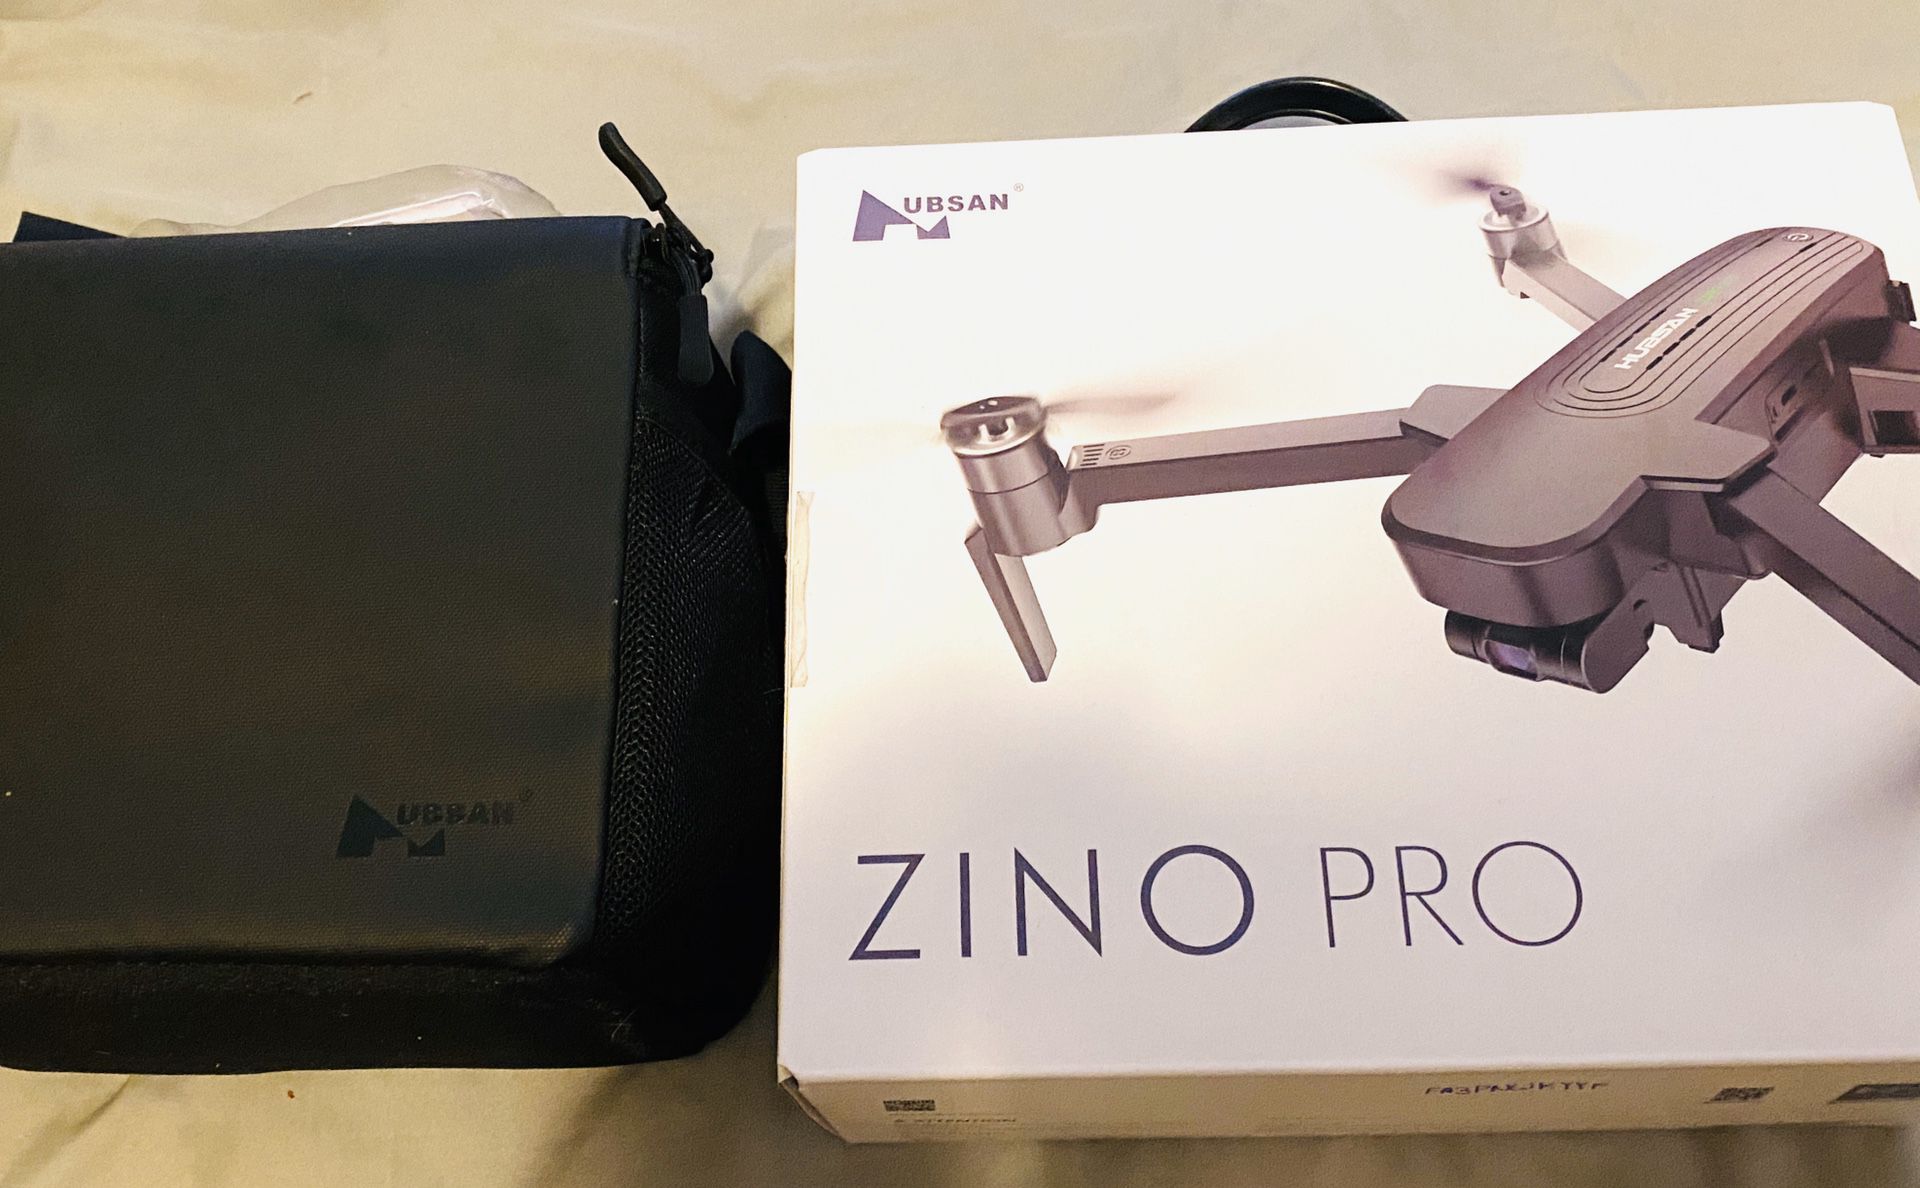 Hubs an Zino Pro Long Range Drone